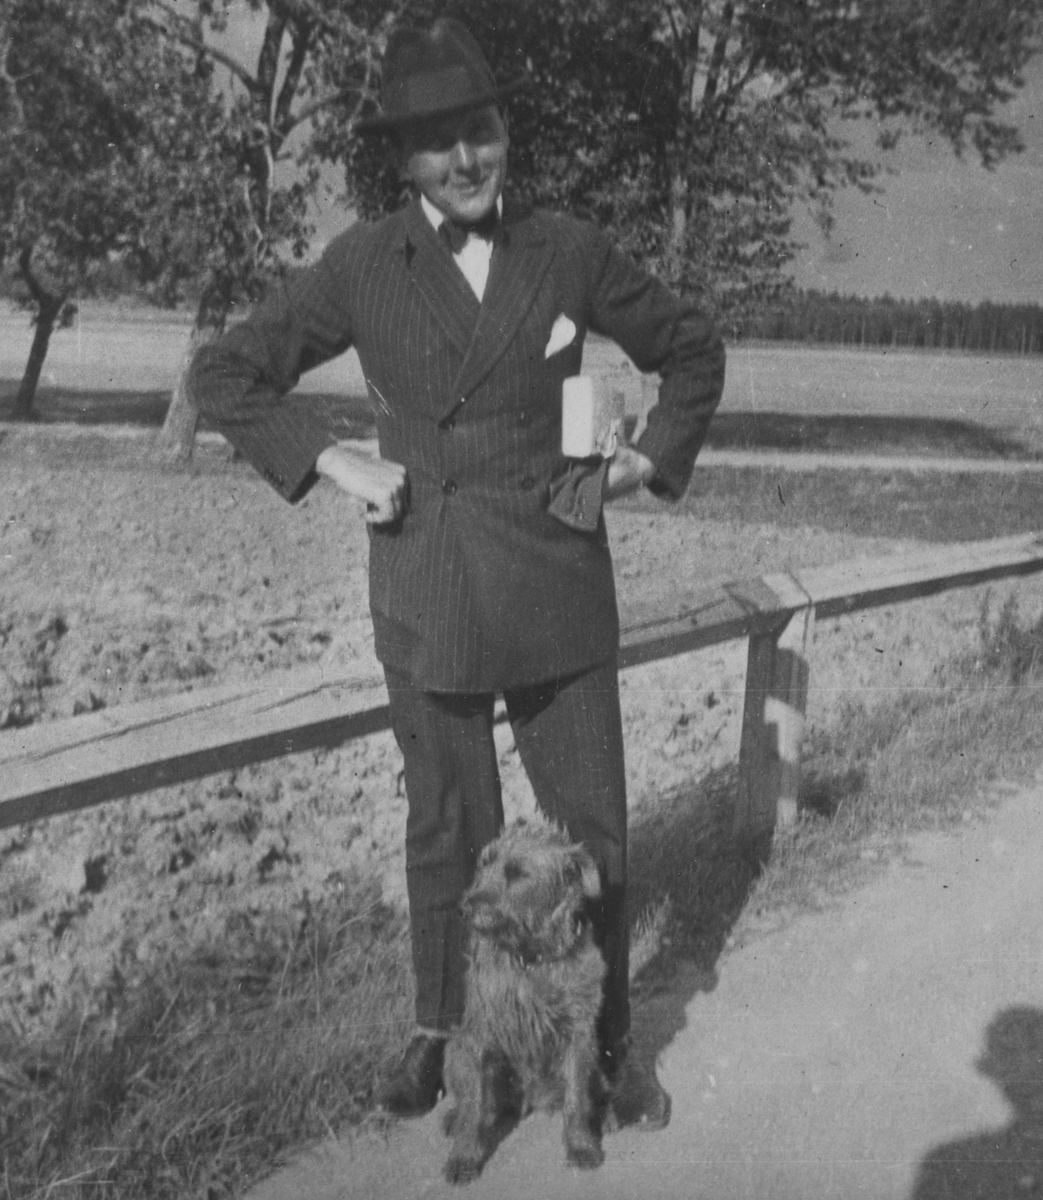 Porträttfoto av militären Nils Kindberg och en hund i Malmslätt, 1925.

Text vid foto: "NK BK"